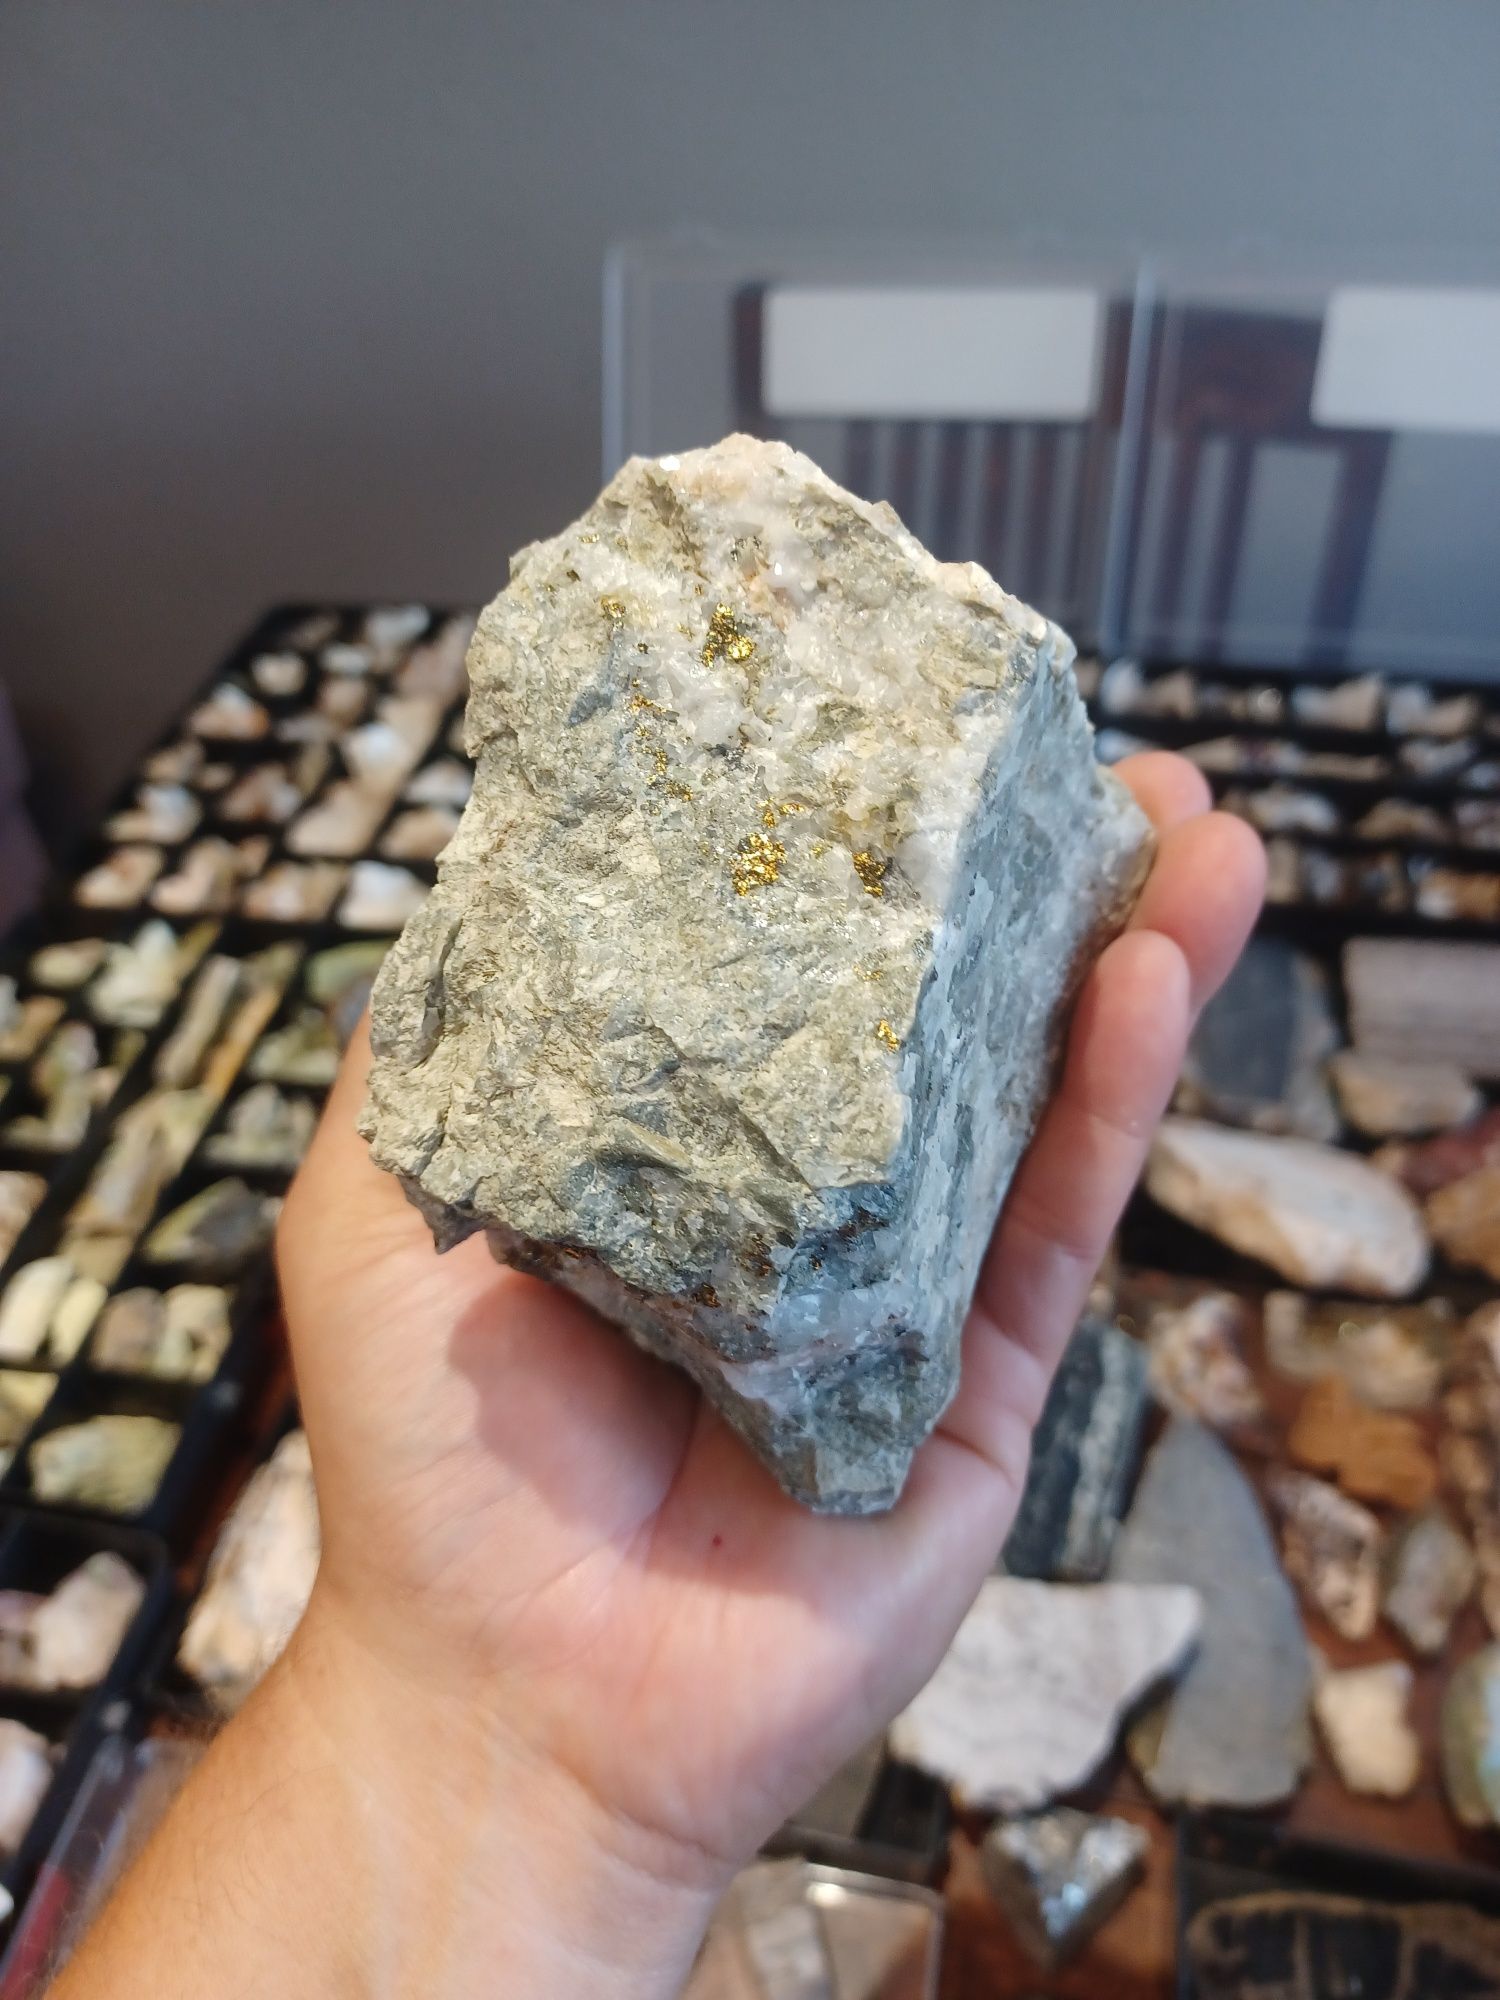 Minerały skamieniałości skały żyłą polimetaliczna piryt,chalkopiryt